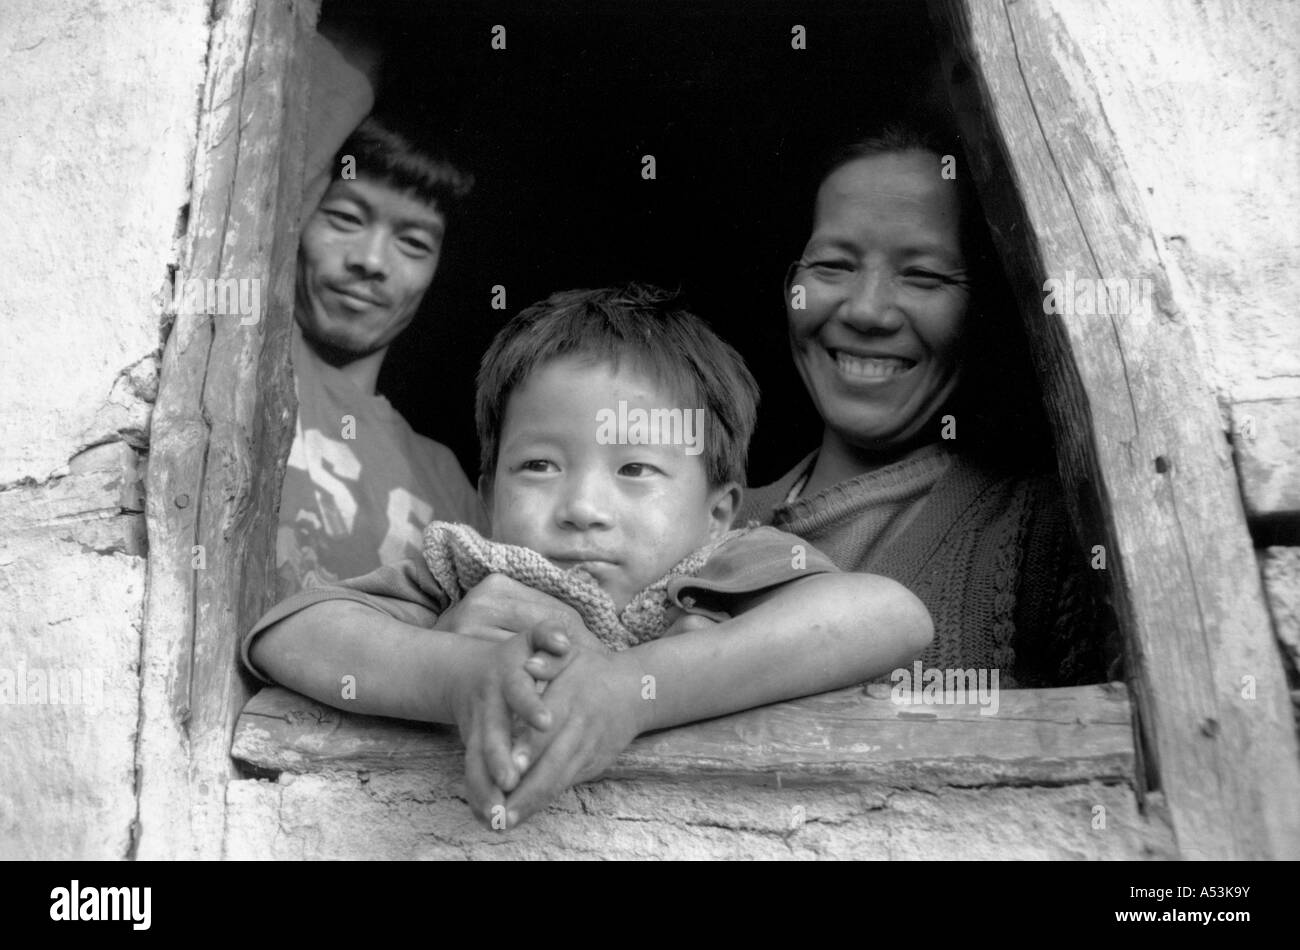 Painet ha1231 007 noir blanc d'immigrants népalais famille inde kalimpong au pays en développement, pays développés économiquement Banque D'Images